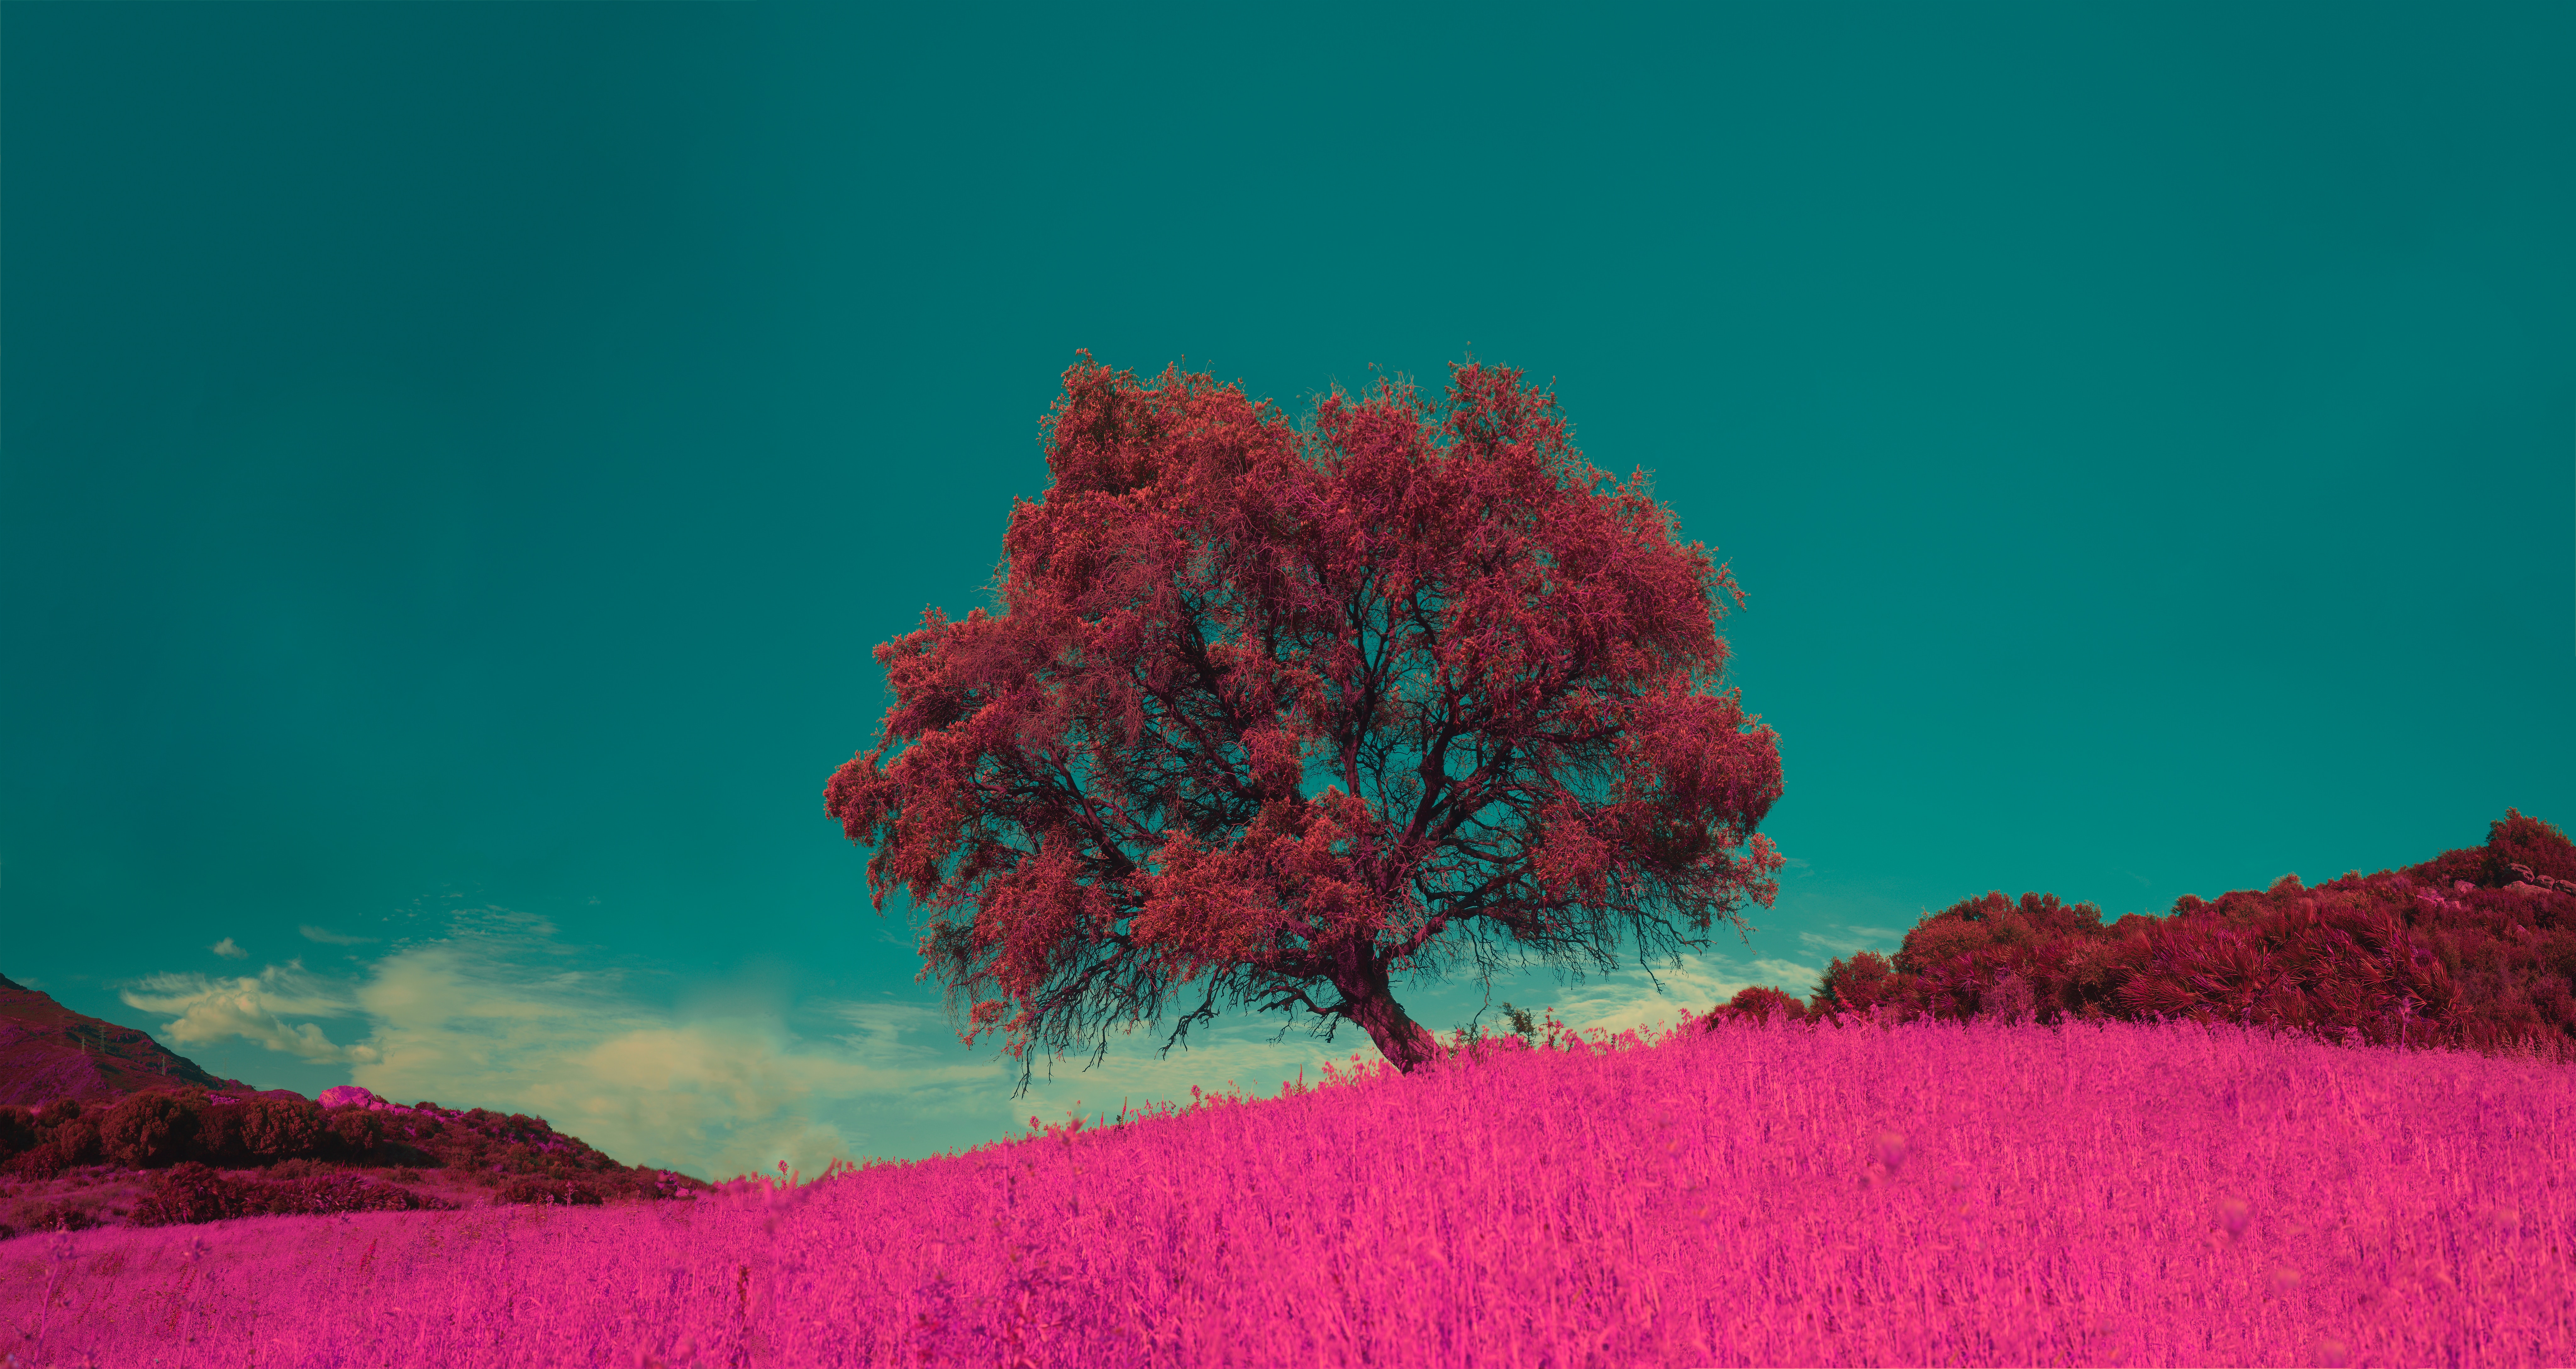 Скачать картинку Дерево, Природа, Трава, Фотошоп, Одинокий, Розовый в телефон бесплатно.